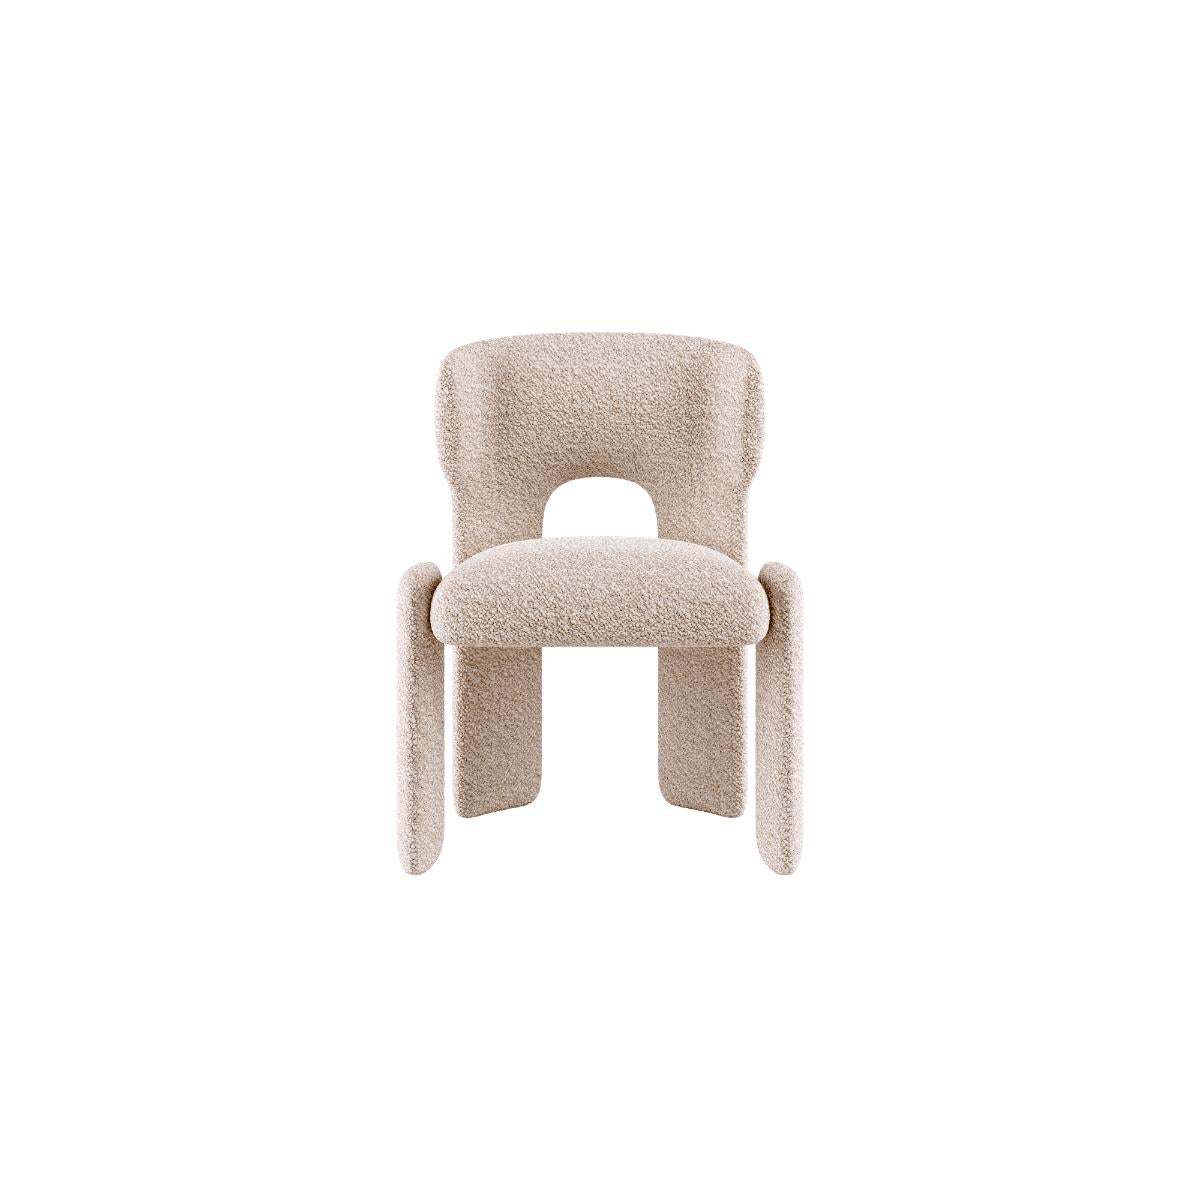 Bold Esszimmerstuhl von Mohdern
Abmessungen: B 61 x T 54 x H 79 cm
MATERIALIEN: Stoff, Bouclé

Bold ist eine raffinierte Möbelkollektion, die von der Marke Mohdern entworfen und produziert wird. Die Serie umfasst den Sessel und den Loungesessel; das